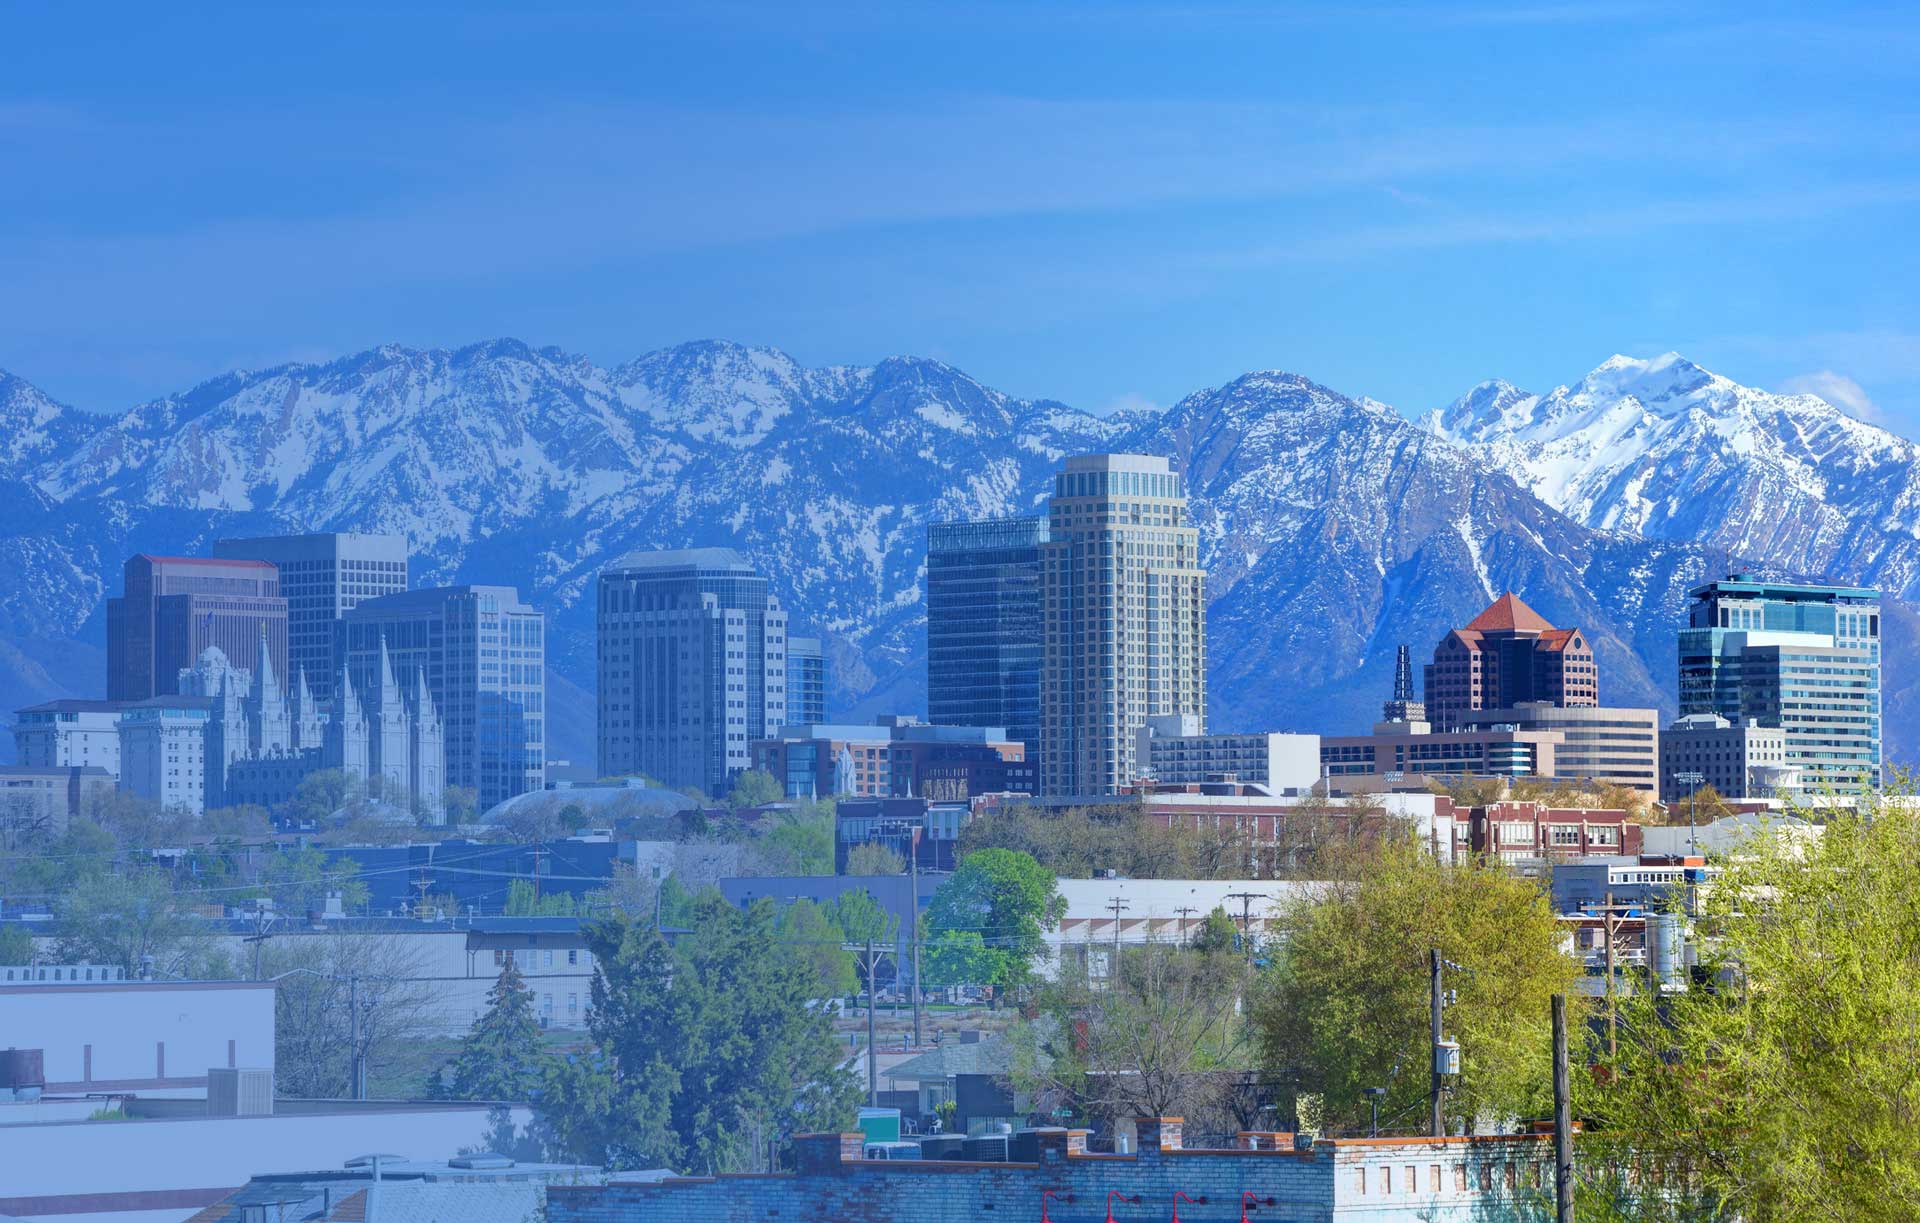 Salt Lake City, Utah skyline